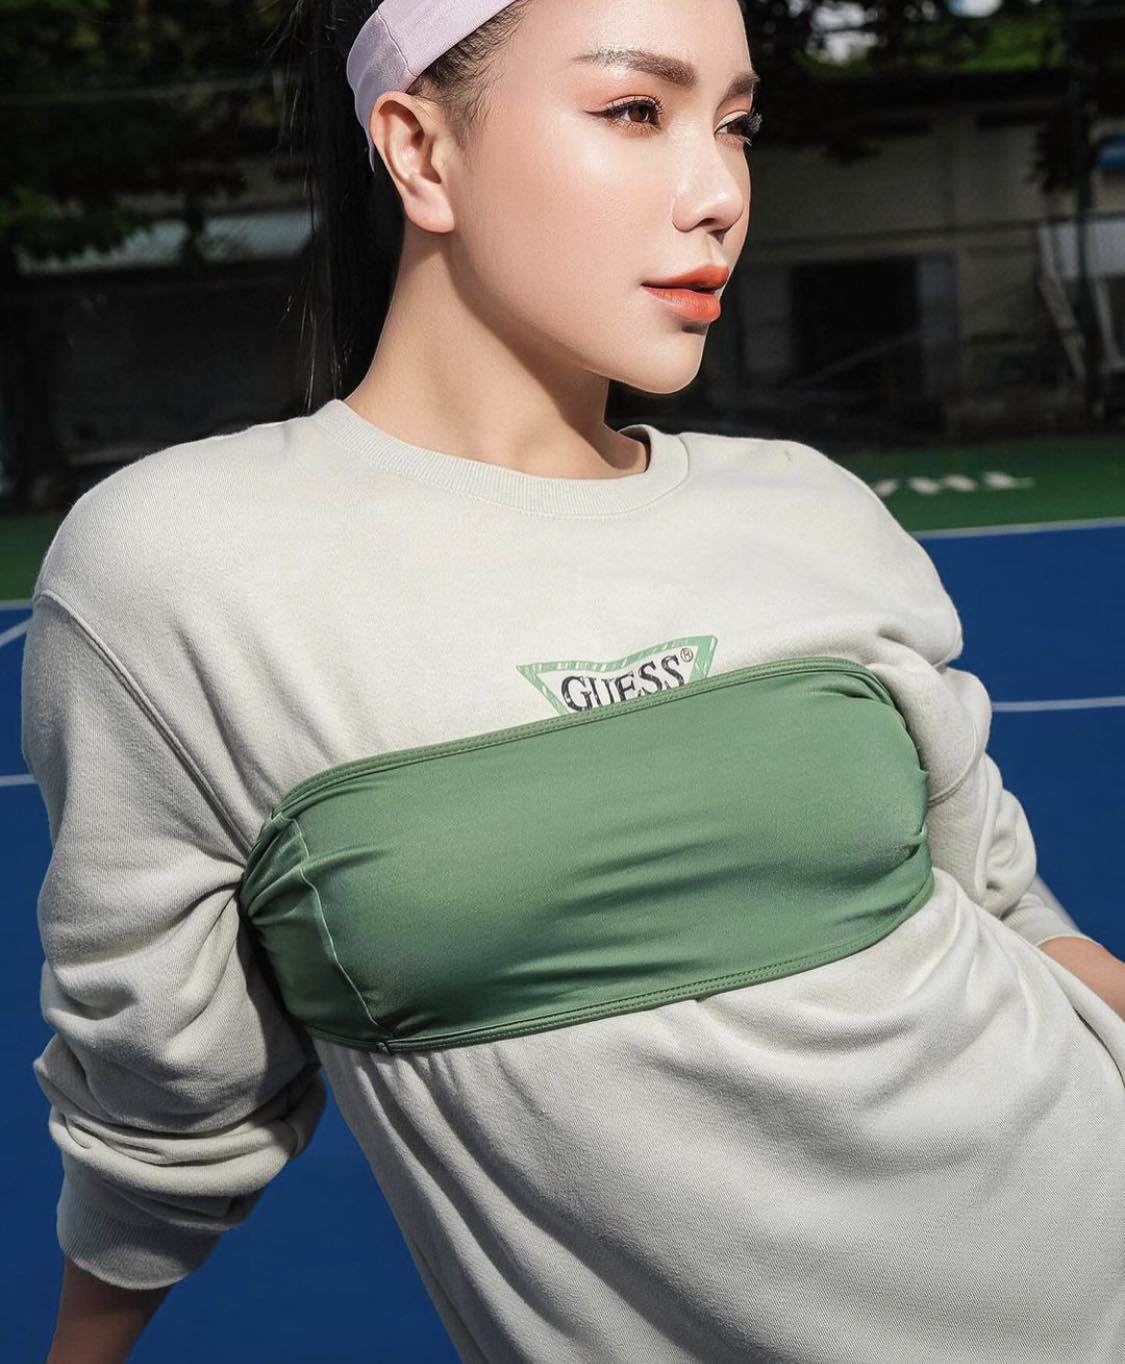 Trà Ngọc Hằng khoe dáng trên sân tennis với outfit bắt mắt.